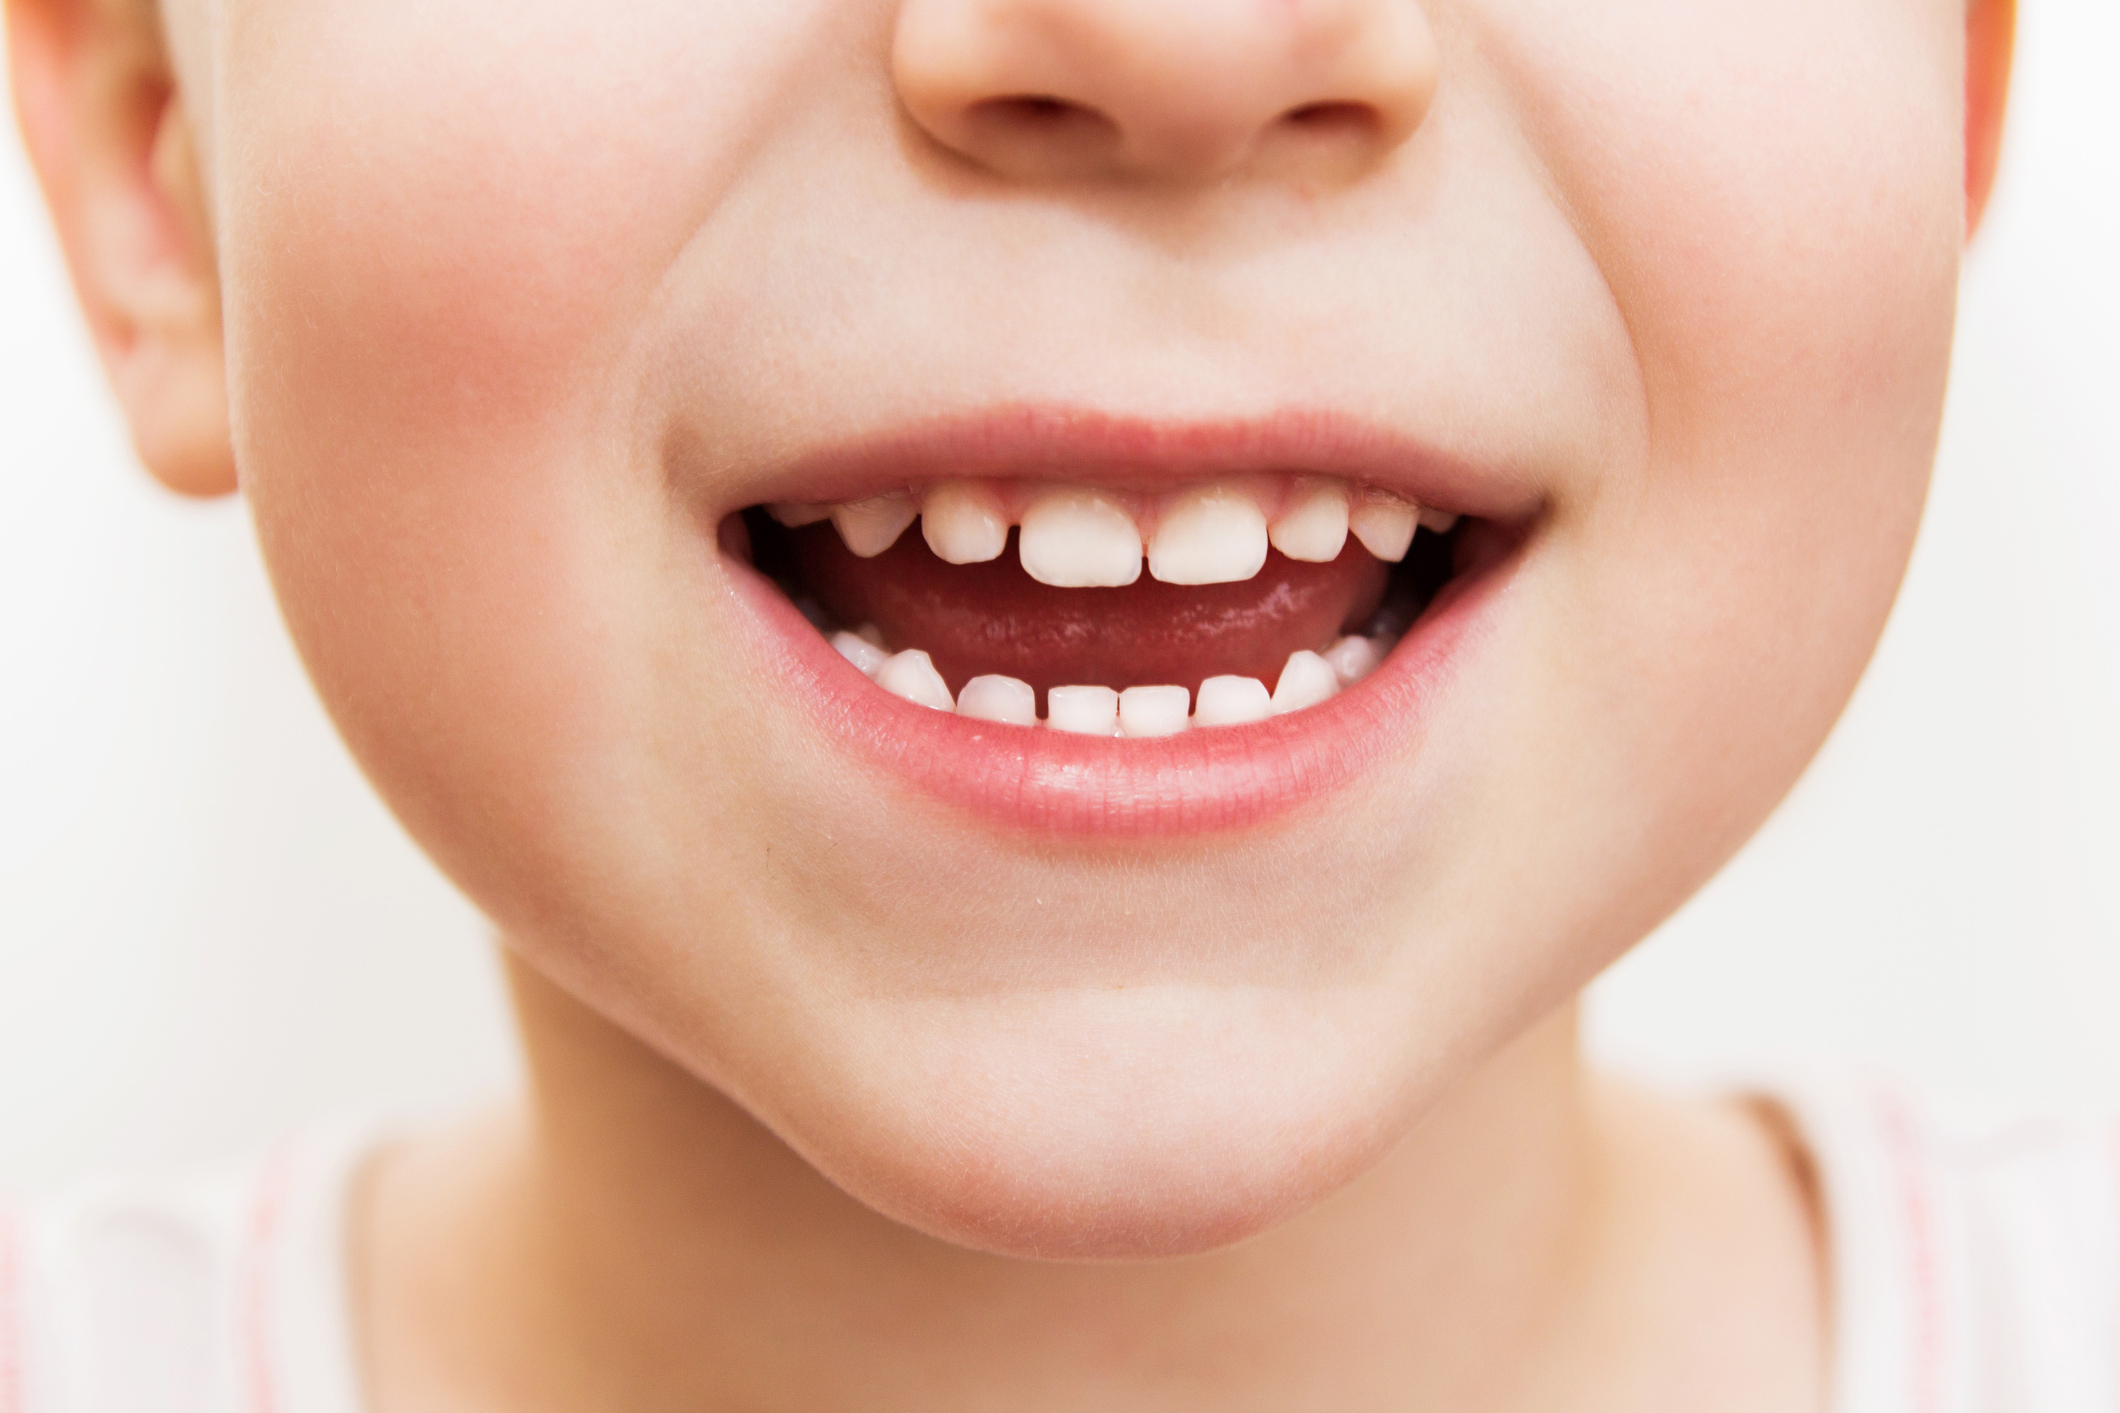 U detí do 6 rokov existuje najvyššie riziko prehltnutia zubnej pasty počas umývania zubov